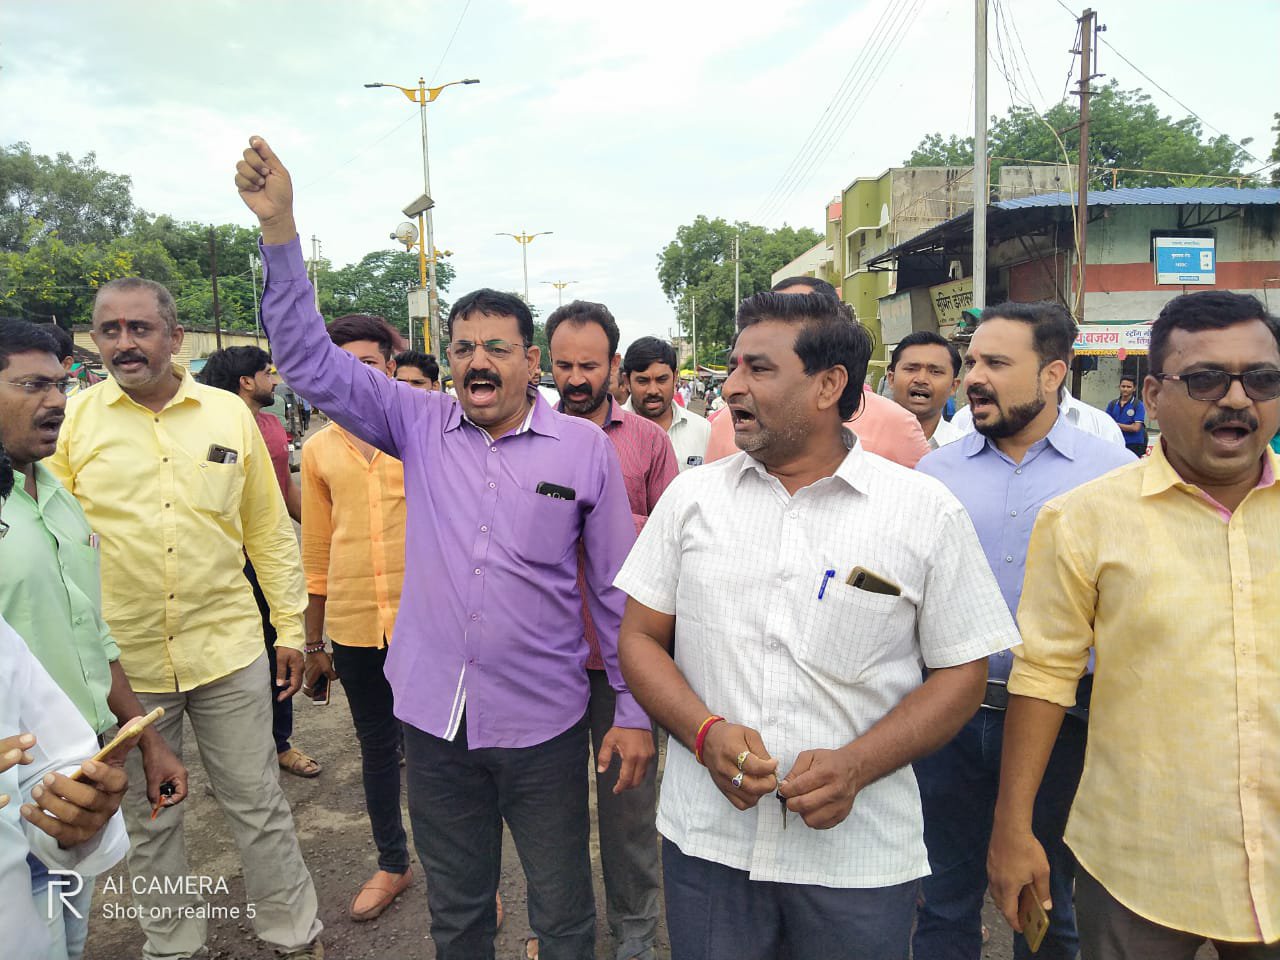 एनसीपी सुप्रीमो शरद पवार के समर्थन मे सफ़ल रहा जामनेर बंद | New India Times